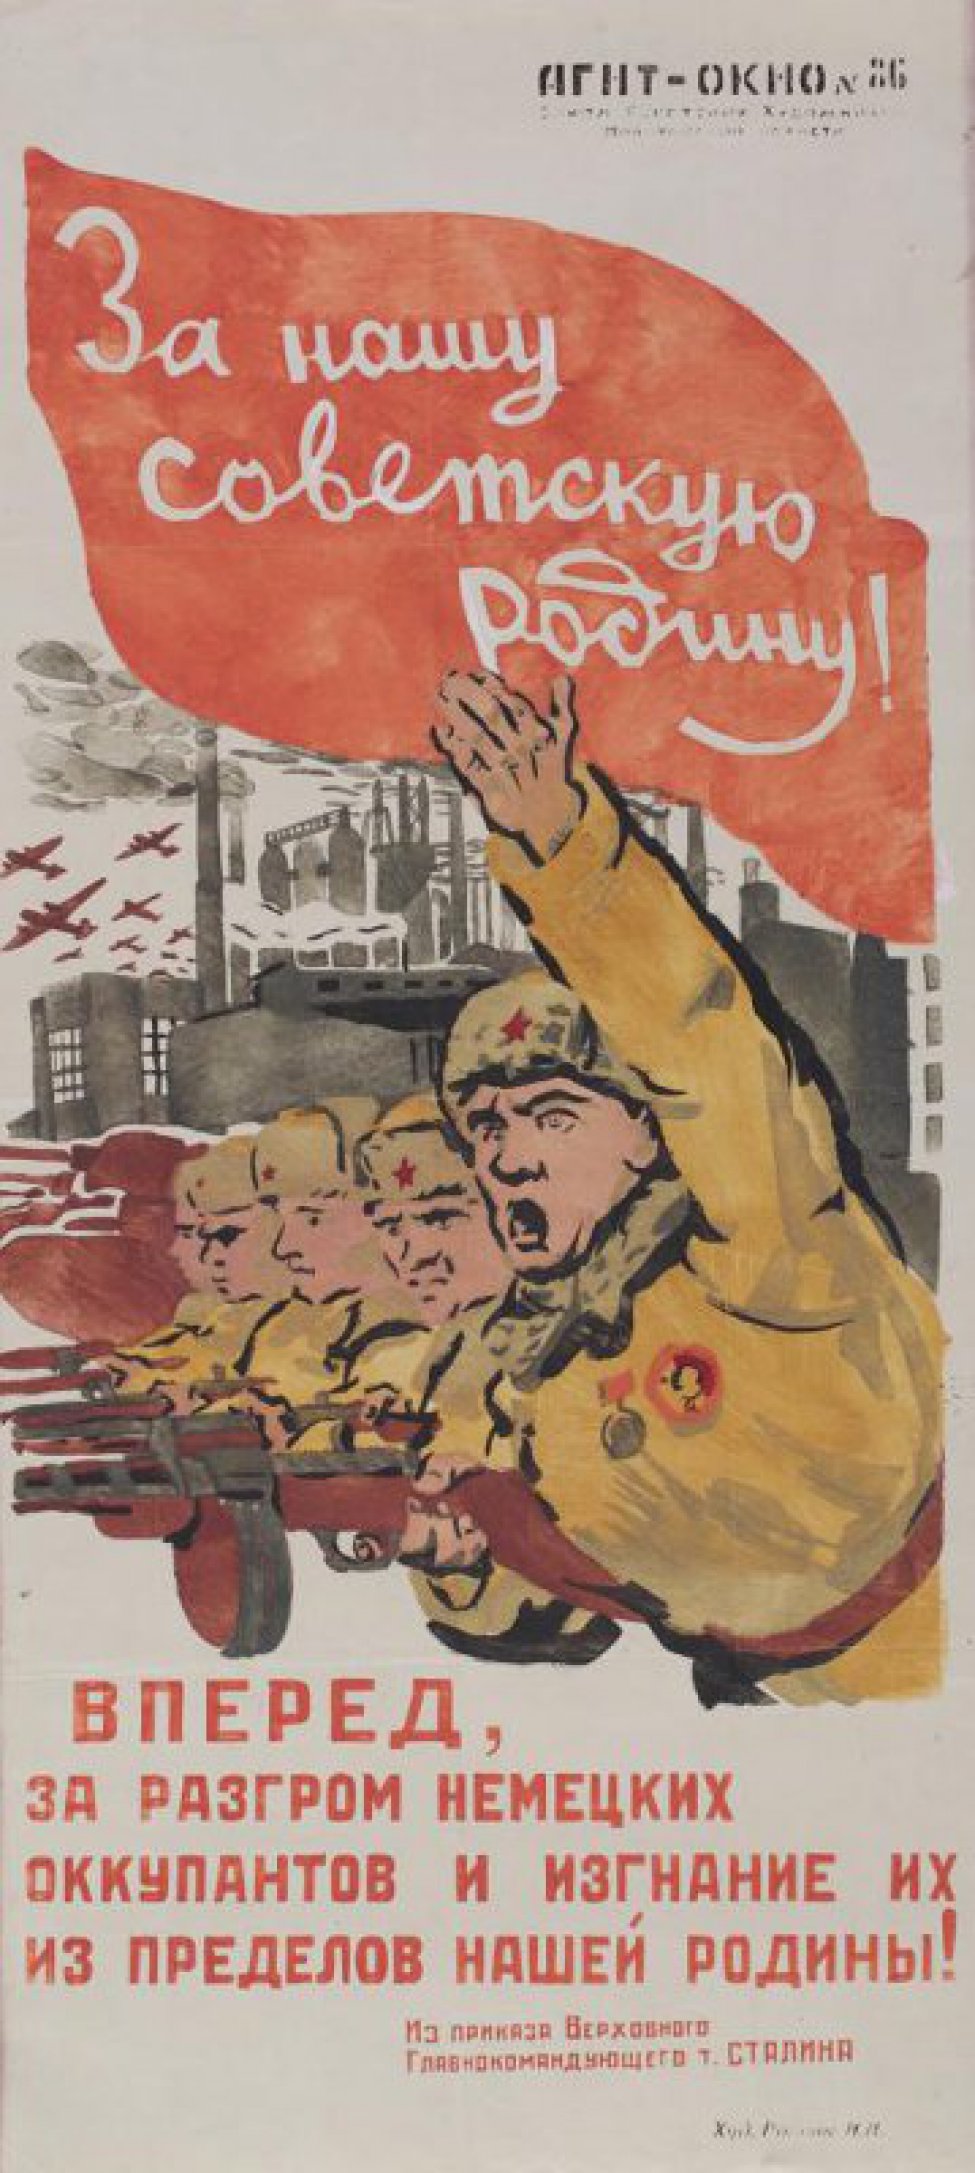 Изображено: группа бойцов с автоматами в руках идут в наступление. За ними: заводы, домны. Над всем красное знамя с надписью: "За нашу советскую Родину!"